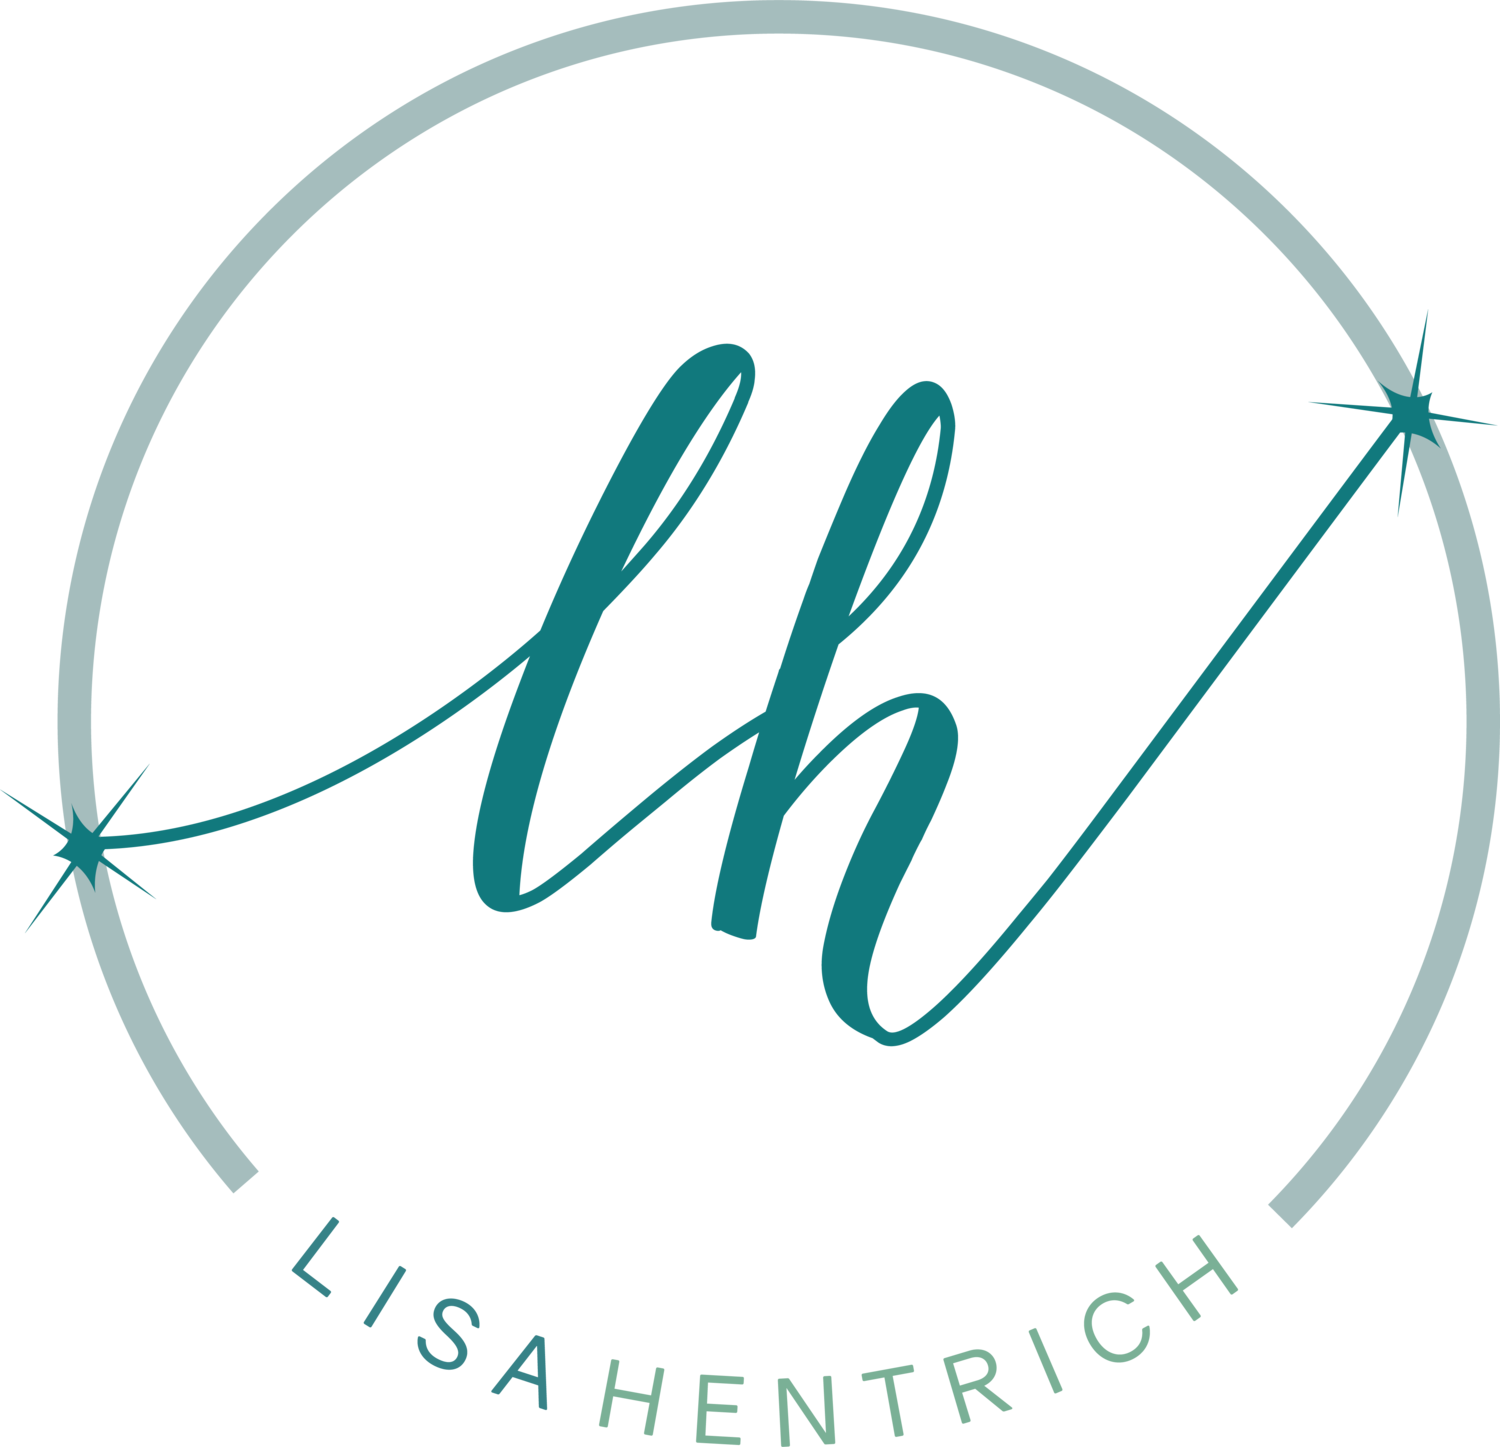 Lisa Hentrich